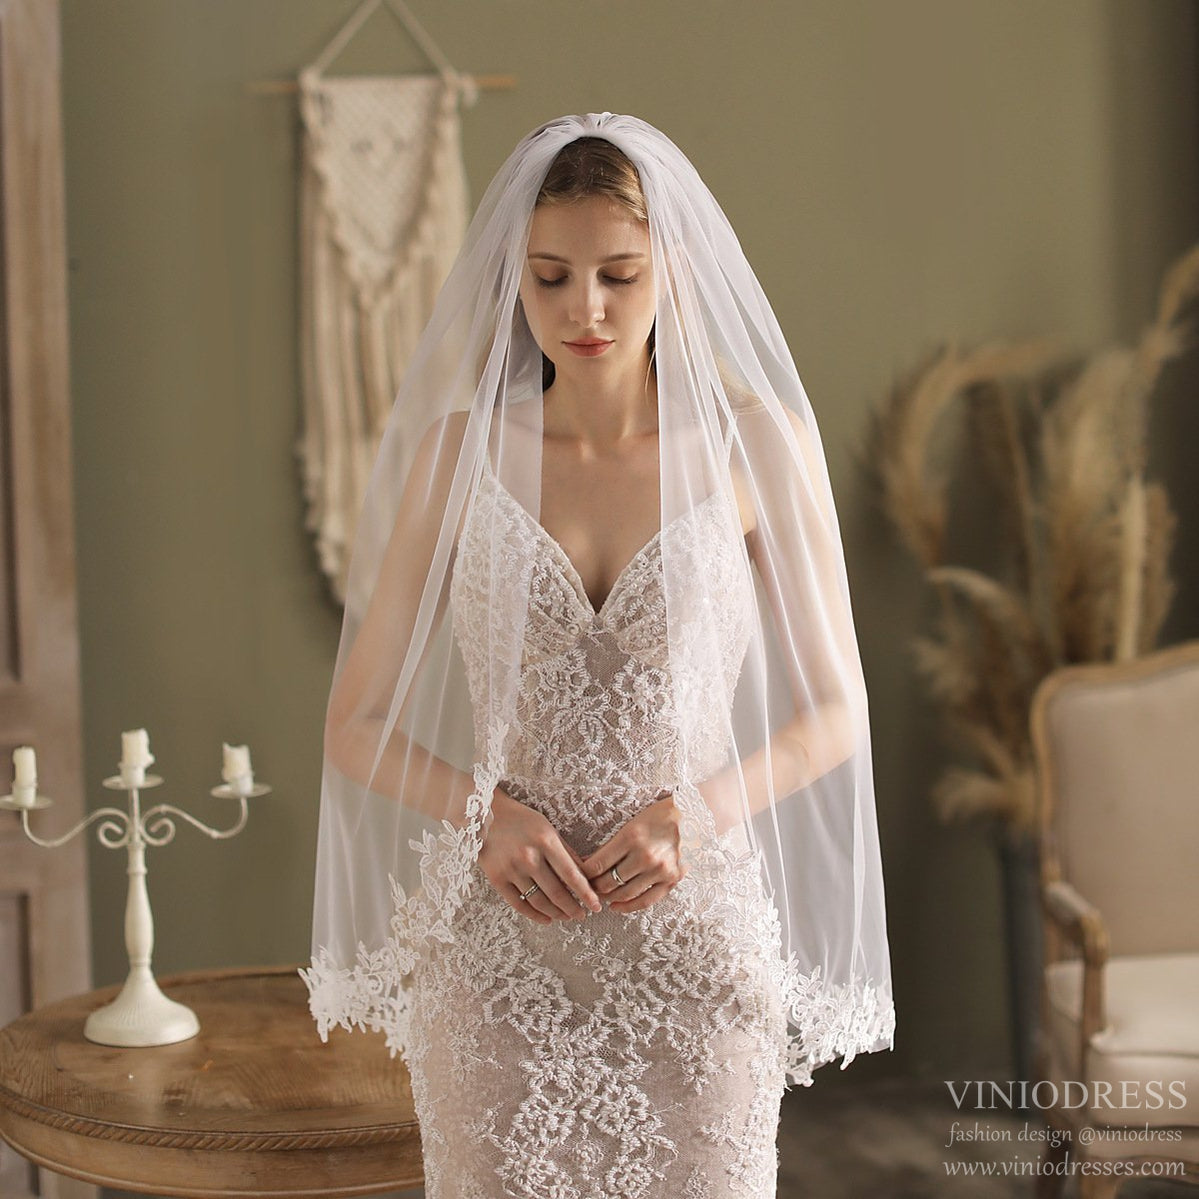 Viniodress Shoulder Length Champagne Bridal Veils